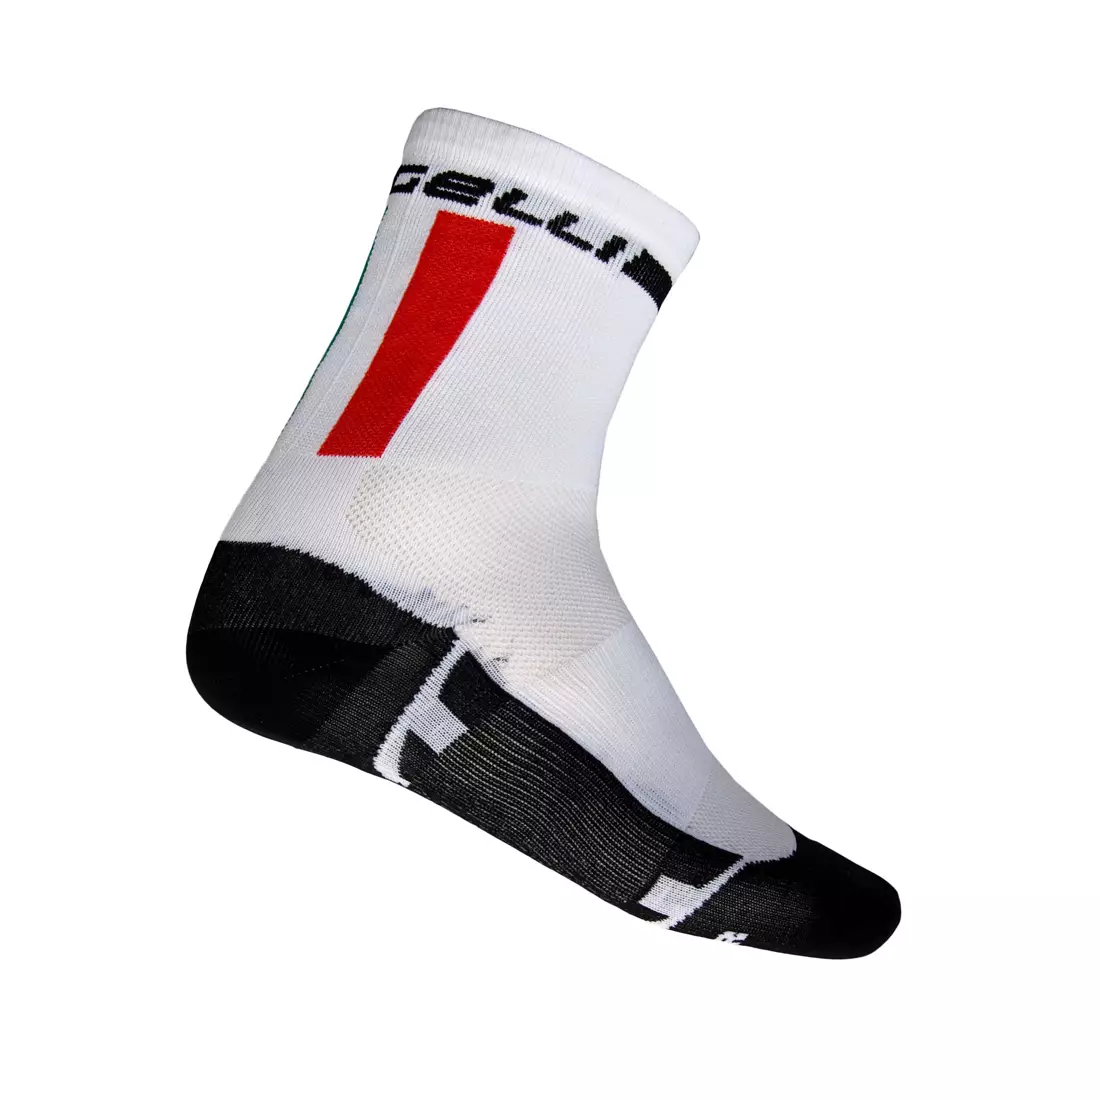 ROGELLI - CYCLING TEAM - MERYL SKINLIFE cycling socks